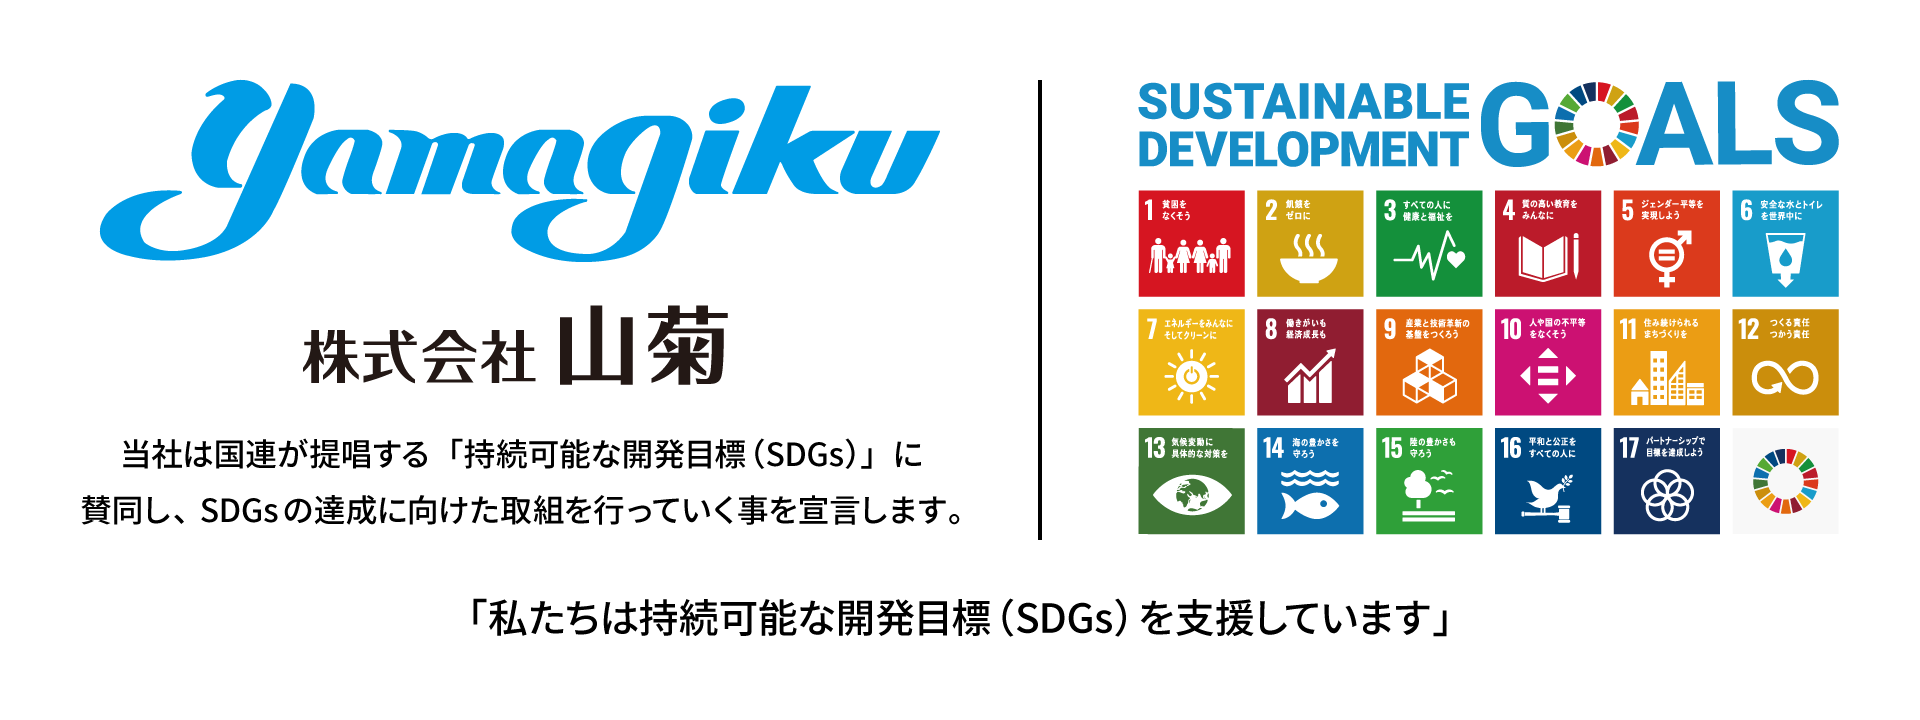 当社は国連が提唱する「持続可能な開発目標（SDGs）」に賛同し、SDGsの達成に向けた取組を行っていく事を宣言します。